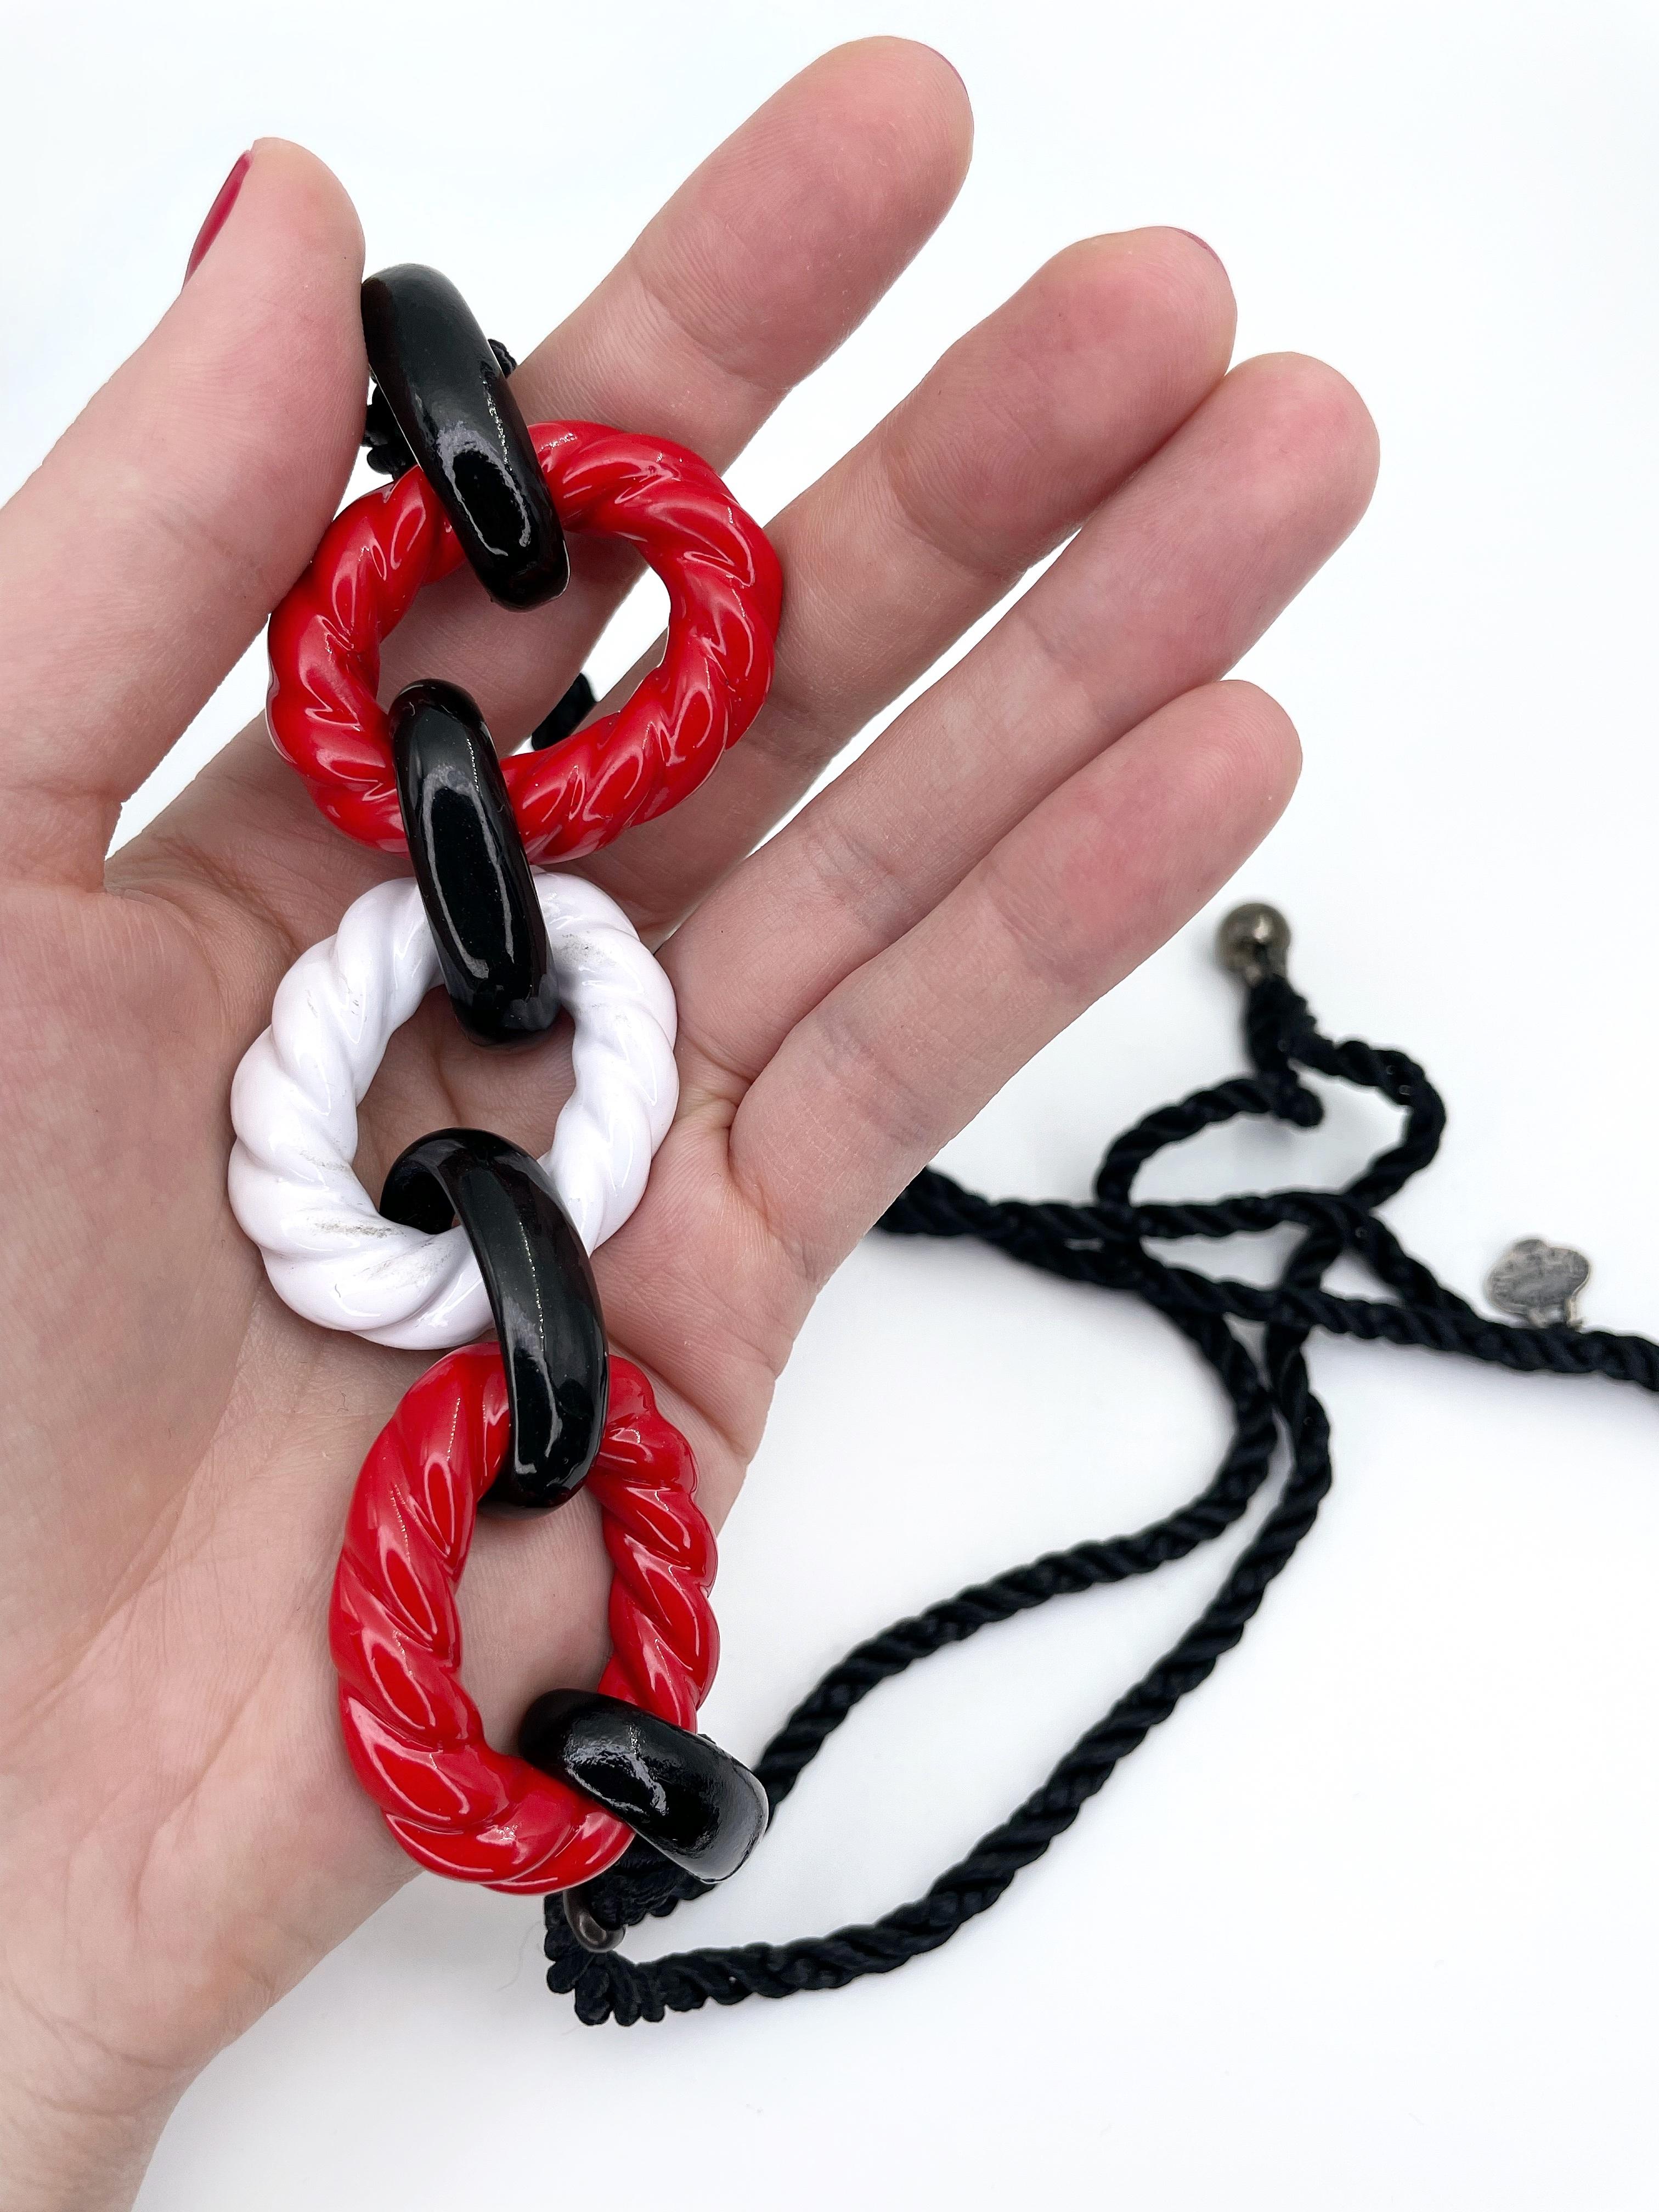 Il s'agit d'un collier en corde au design nautique coloré créé par YSL dans les années 1980. La pièce comporte des détails en métal émaillé rouge, blanc et noir au centre. Le cordon de soie torsadé noir est terminé par des perles. 

Signé : 